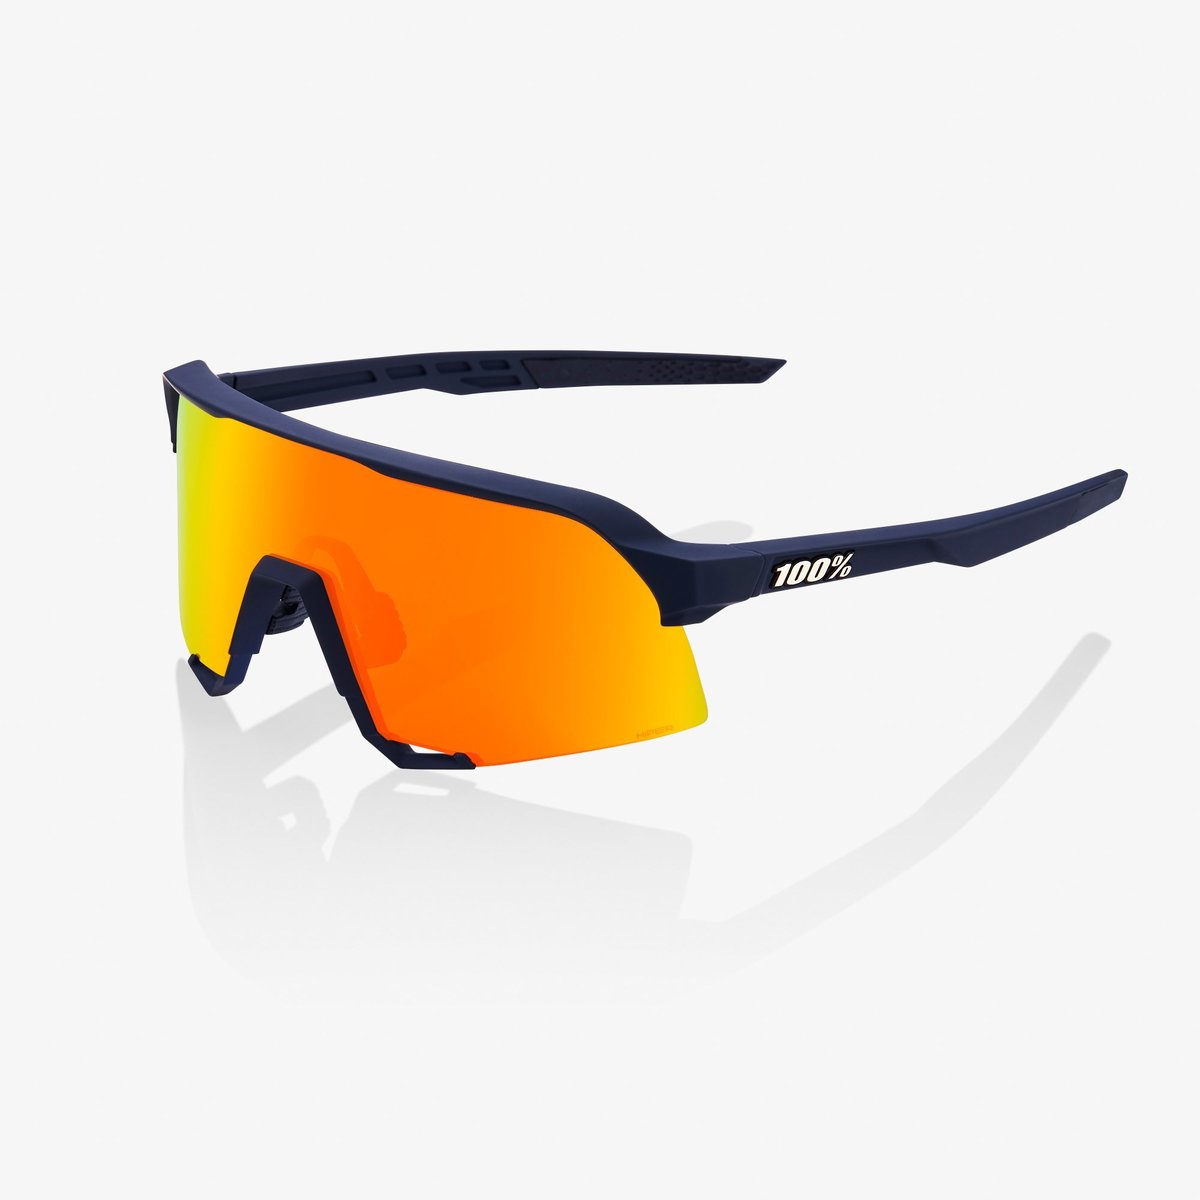 Soft Gold 61034-100-69 Soft Tact Black 100% Percent Cycling S3 Sunglasses 